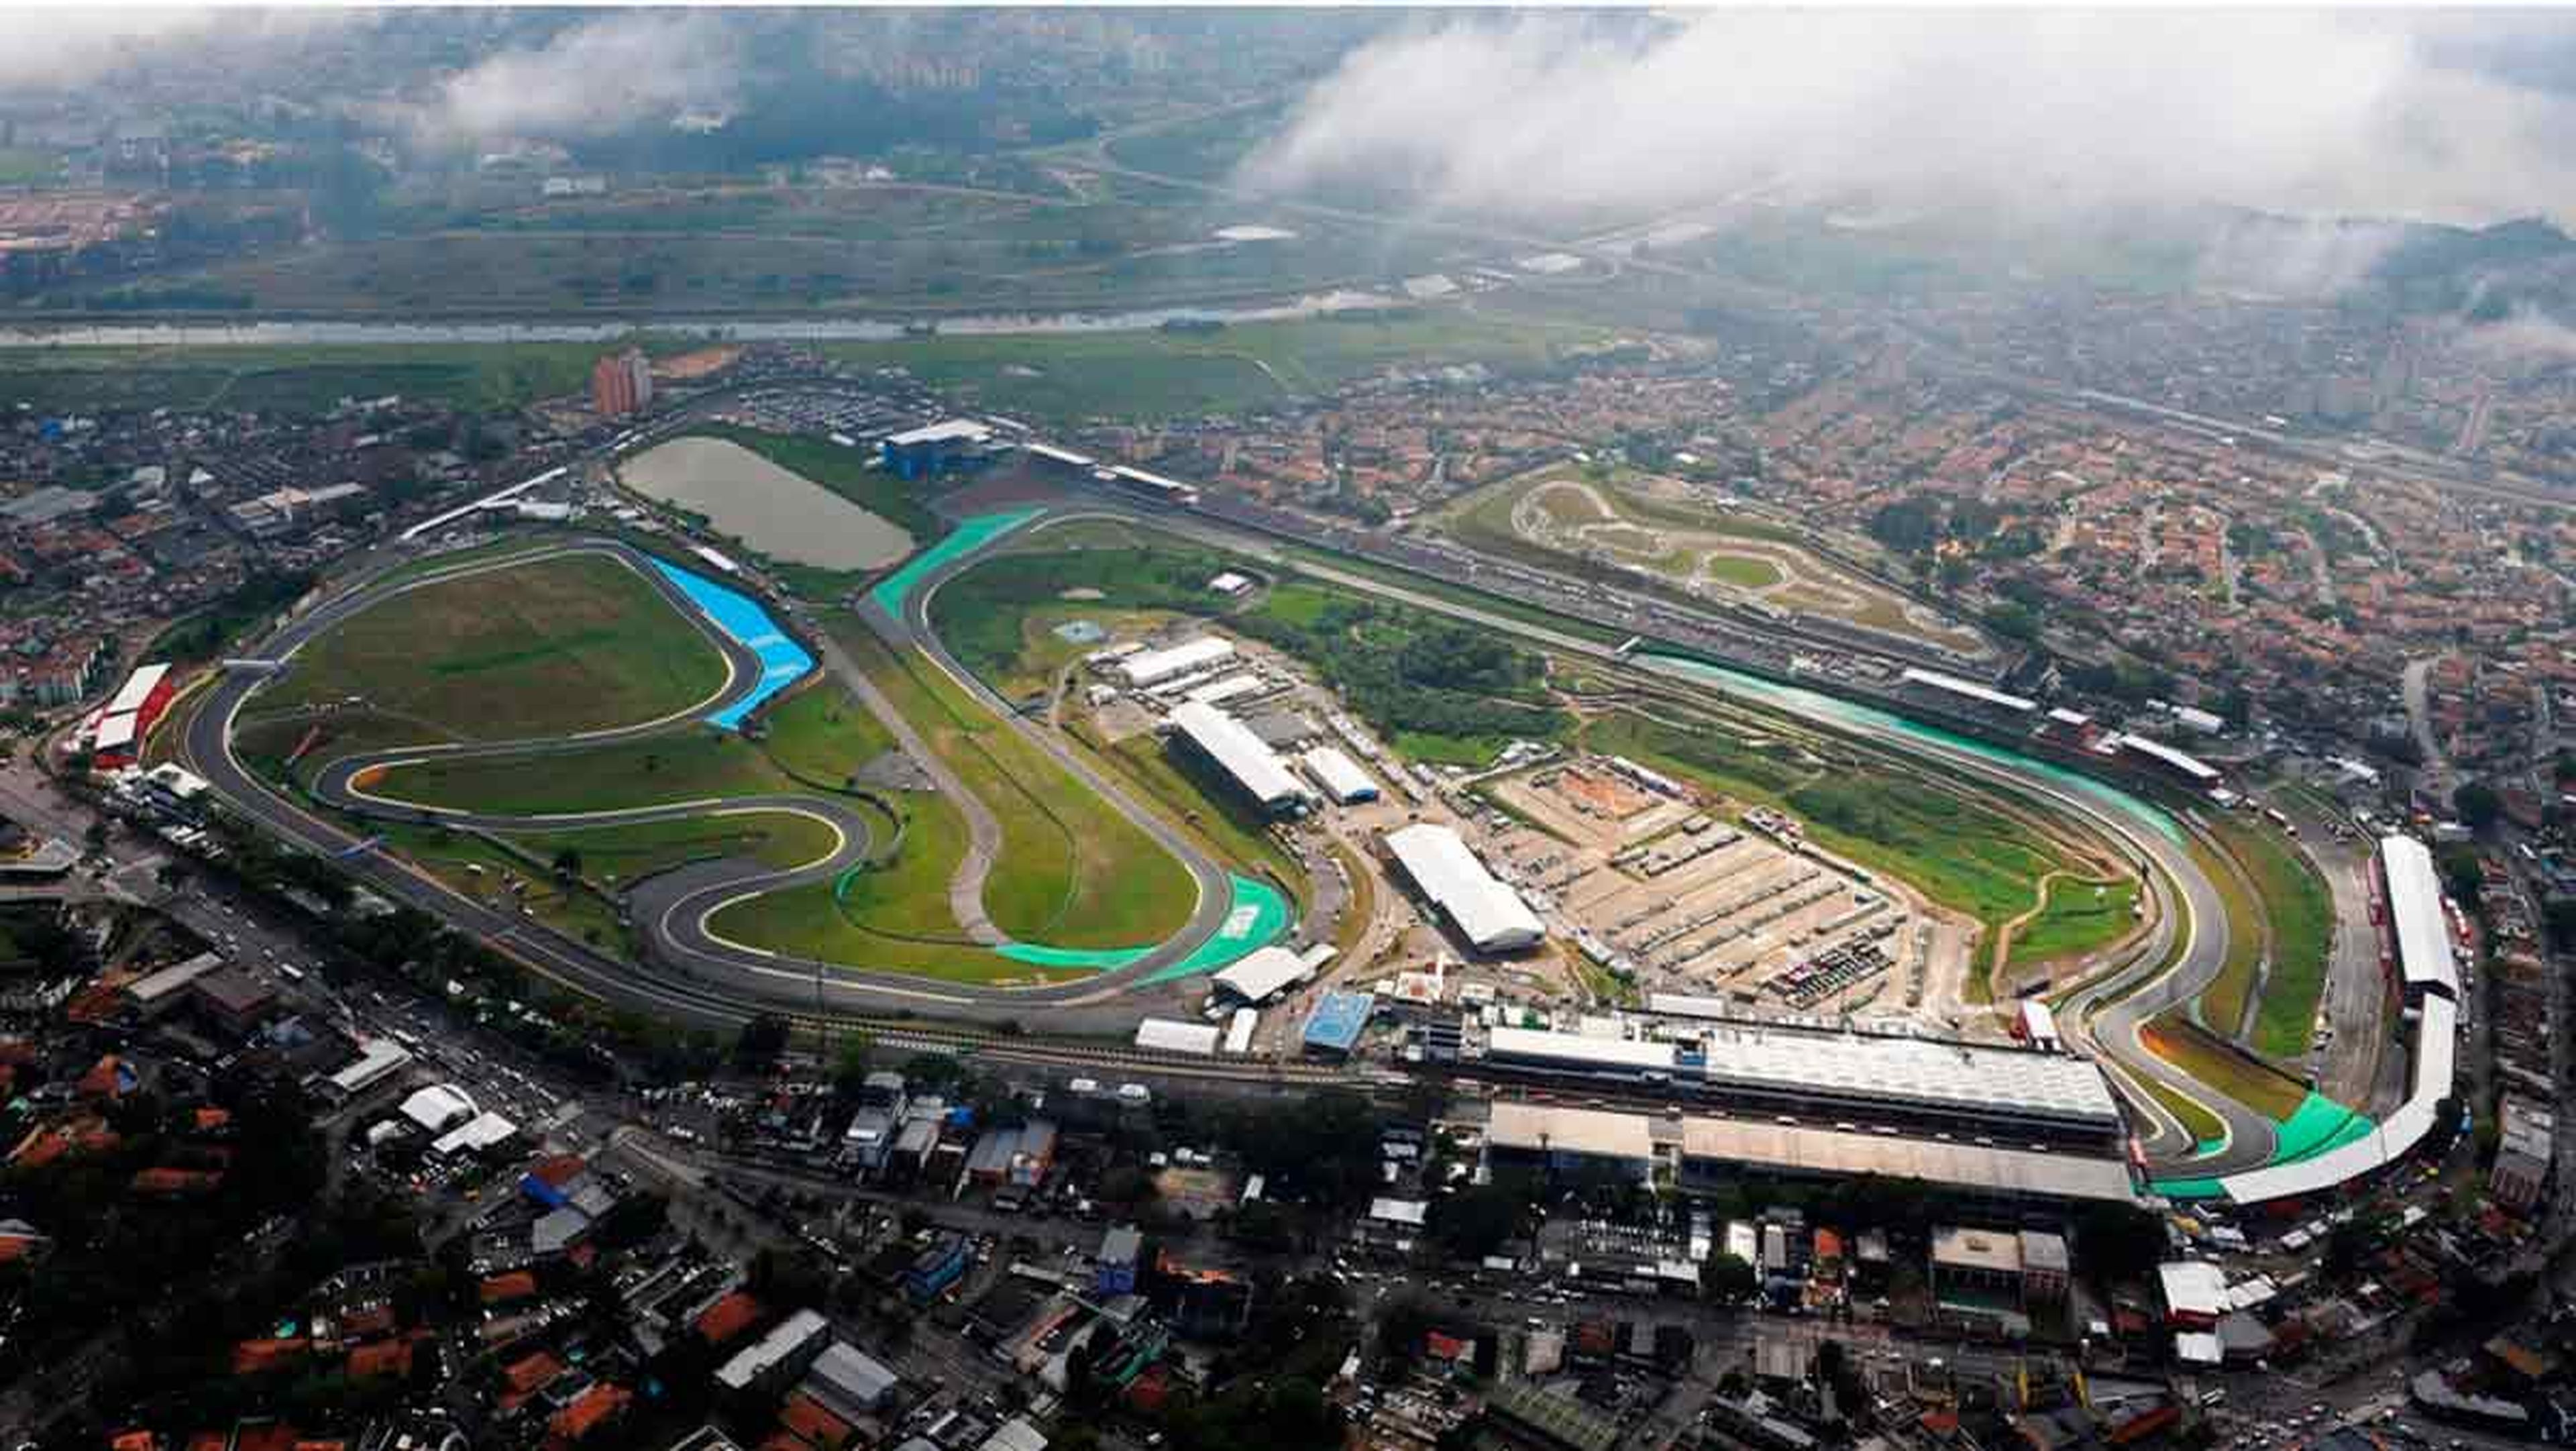 Circuito de Interlagos